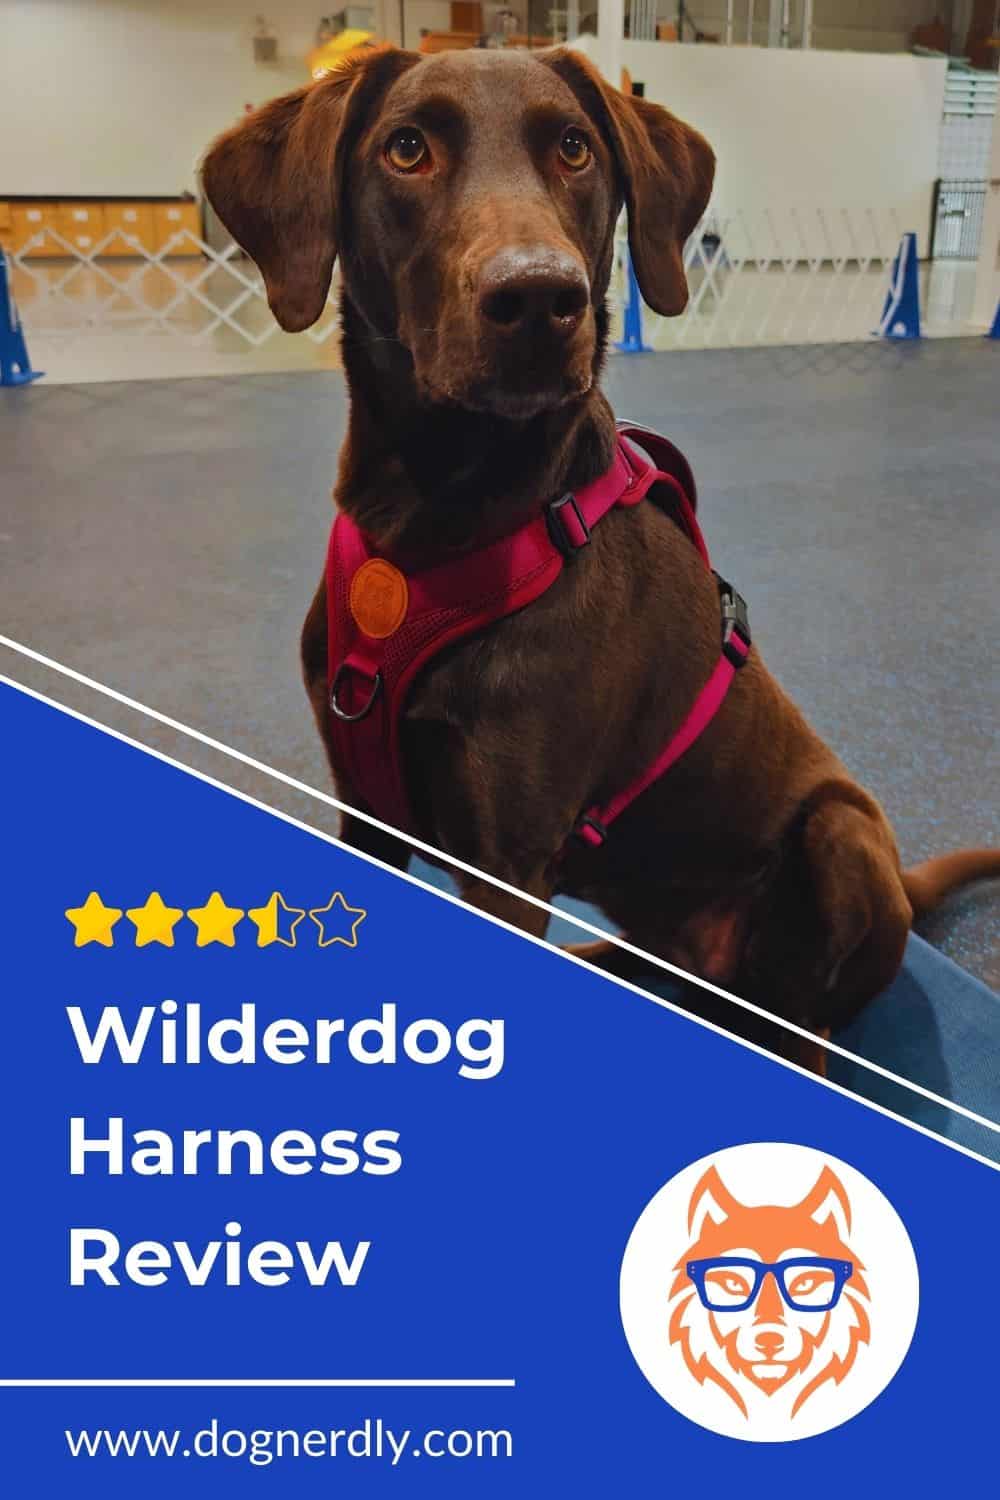 Expert Review: Wilderdog Harness